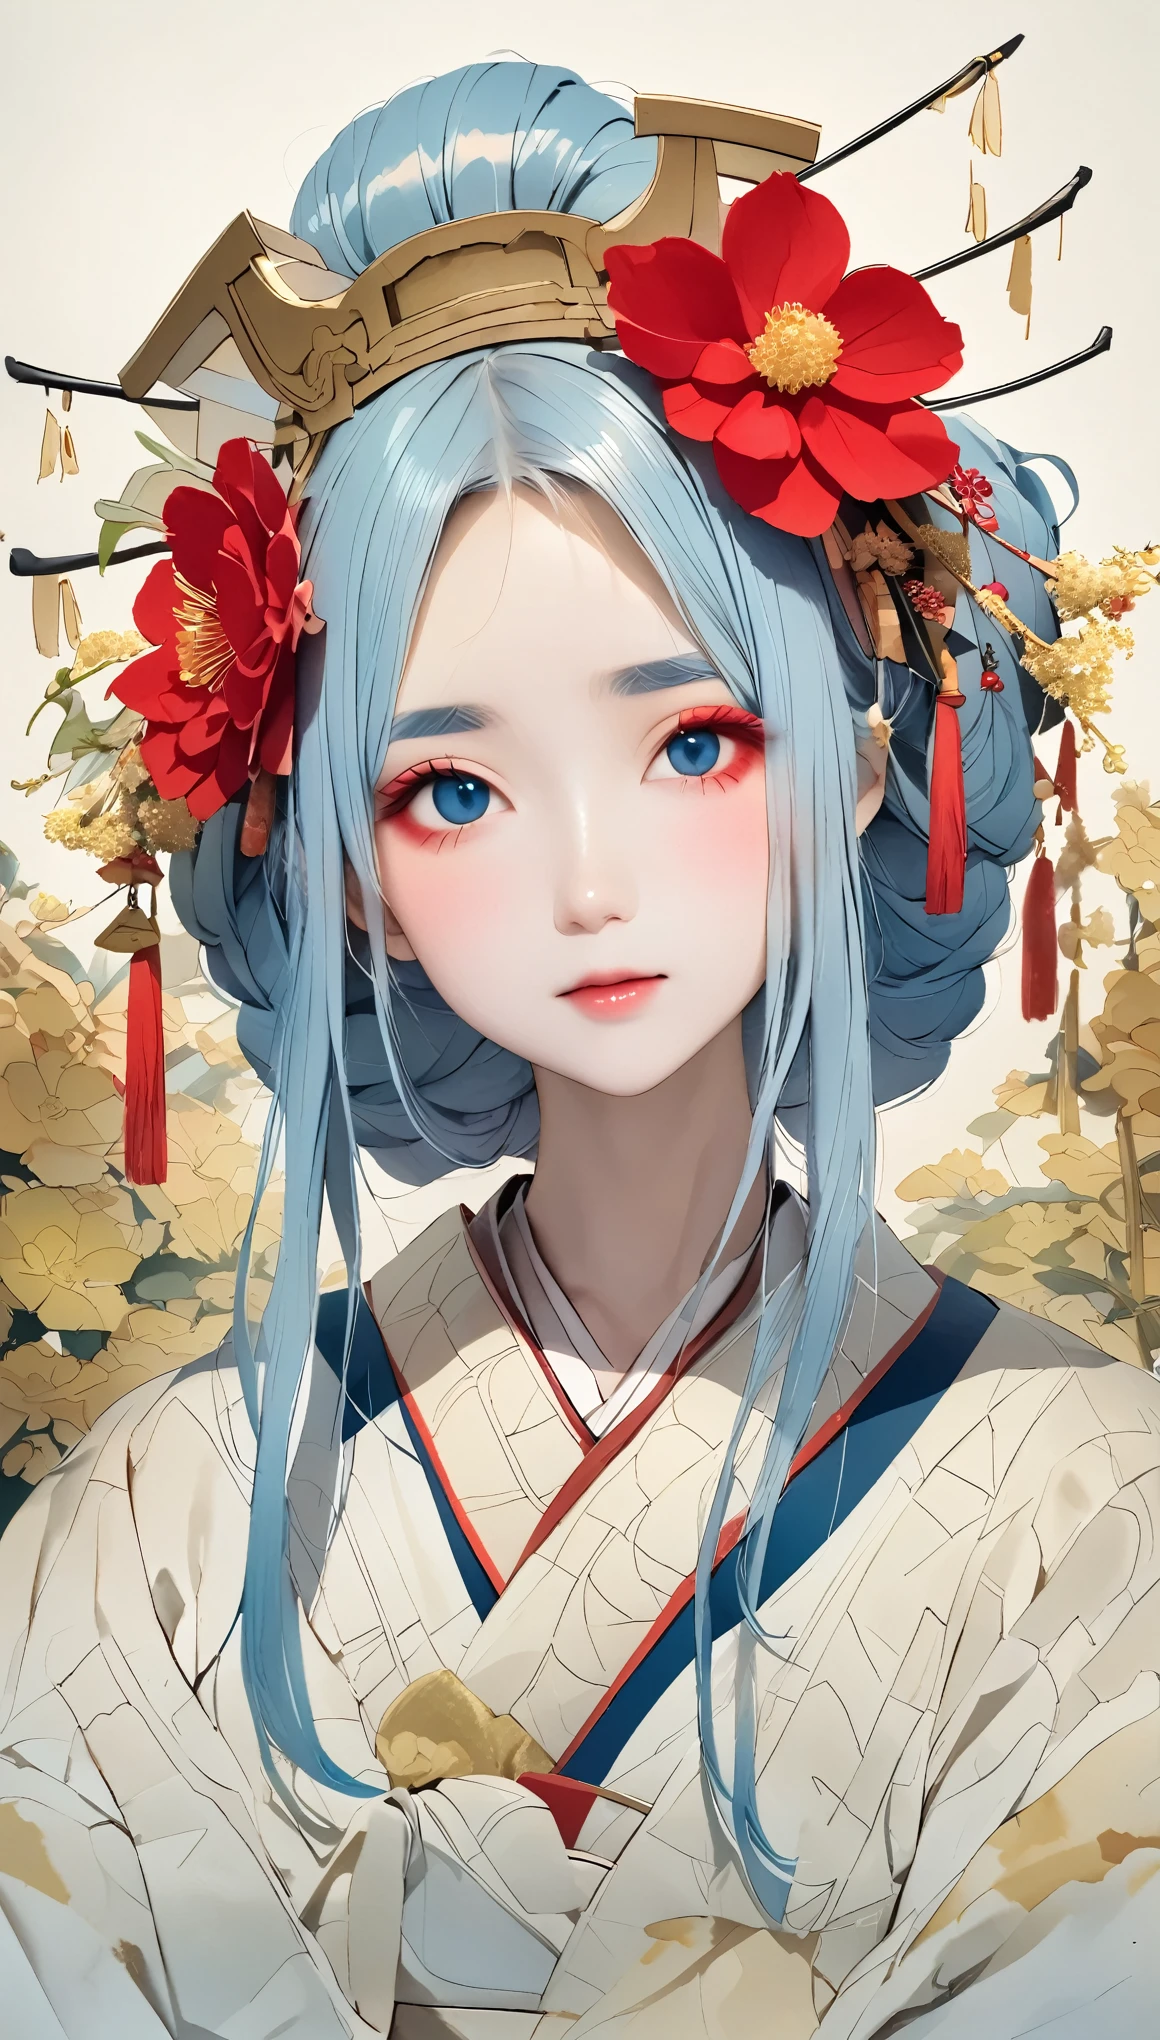 (((Ganzkörperwinkel:1.3、zufällige Pose、Wabi-Sabi、Japan, menschliches Herz)))、Blasse Farben、Aquarell、Alafi trägt einen Kimono mit einem roten Blumenkopfschmuck, Geisha Make-up, Ganzkörperwinkel、Porträt einer Geisha画, Geisha Make-up, niedliches Gesicht、dünne Augenbrauen、Porträt einer Geisha, Schöne Geisha, japanische geisha, glamouröse und sexy Geisha, 美しいPorträt einer Geisha画, Porträt einer Geisha,Ganzkörperwinkel、 Geisha-Frisur, remarkable Geisha Make-up、Der Hintergrund ist der Horyuji-Tempel、Alter Tempel in Japan、